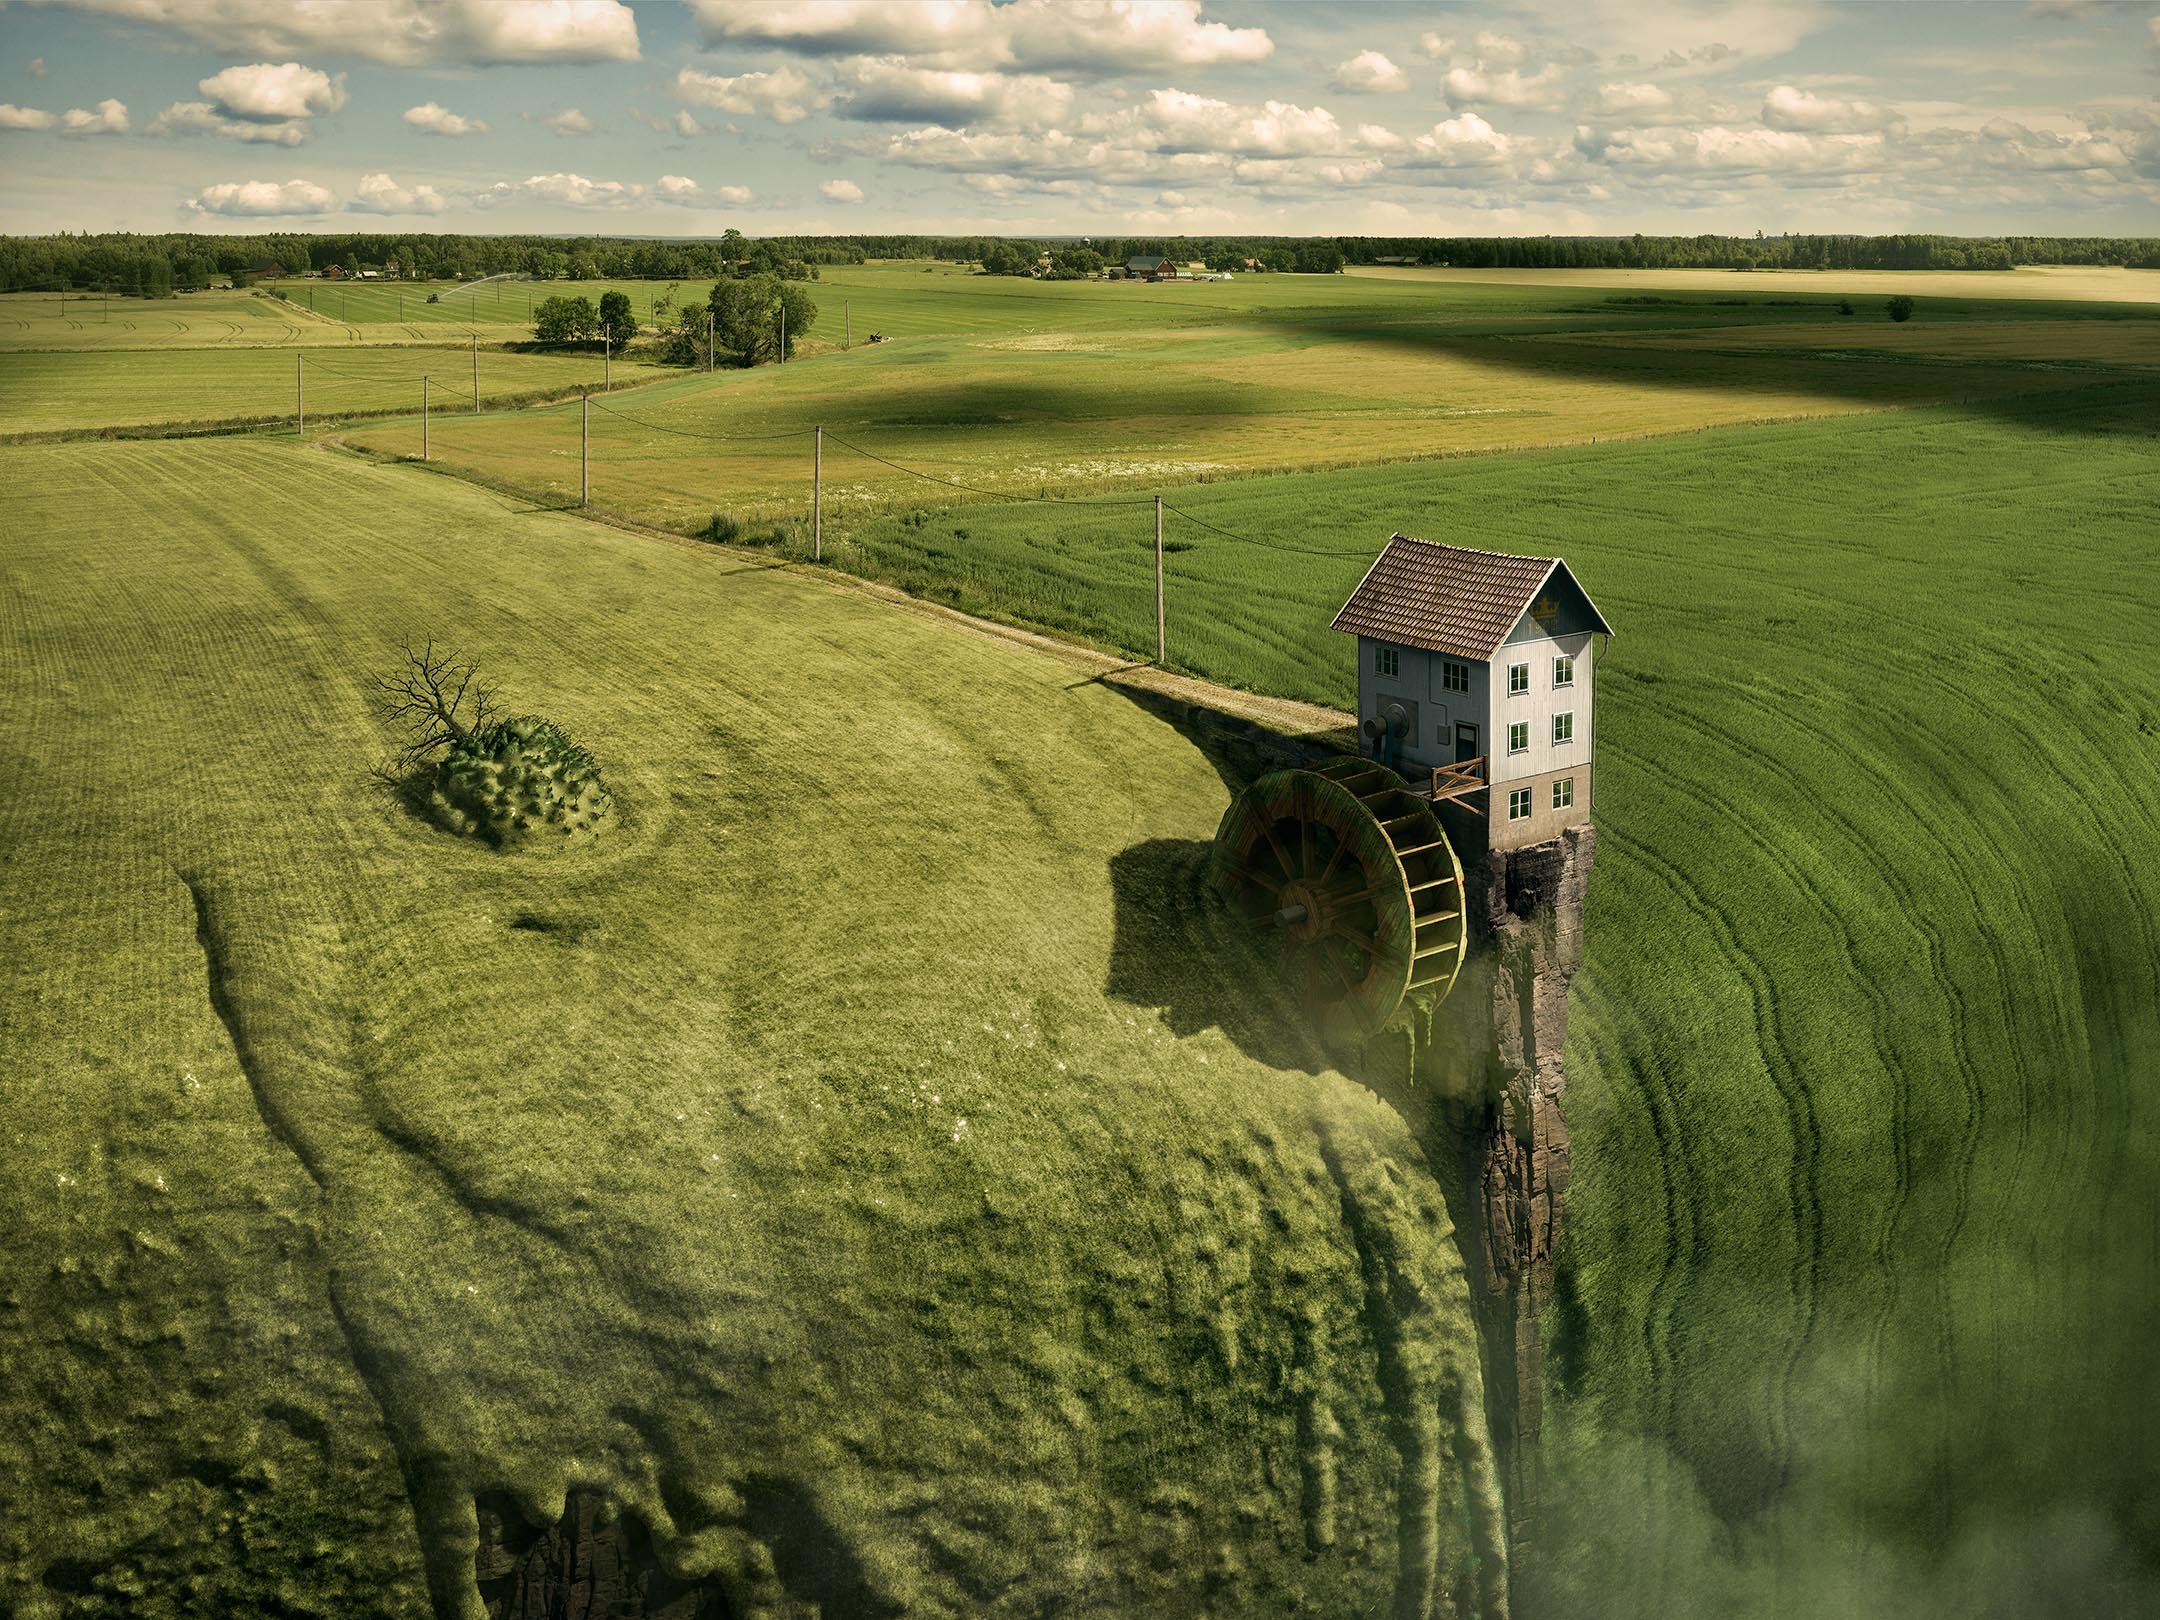 Nature Landscape Photoshop Digital Art Surreal Erik Johansson House Mill Field Clouds Utility Pole P 2160x1620